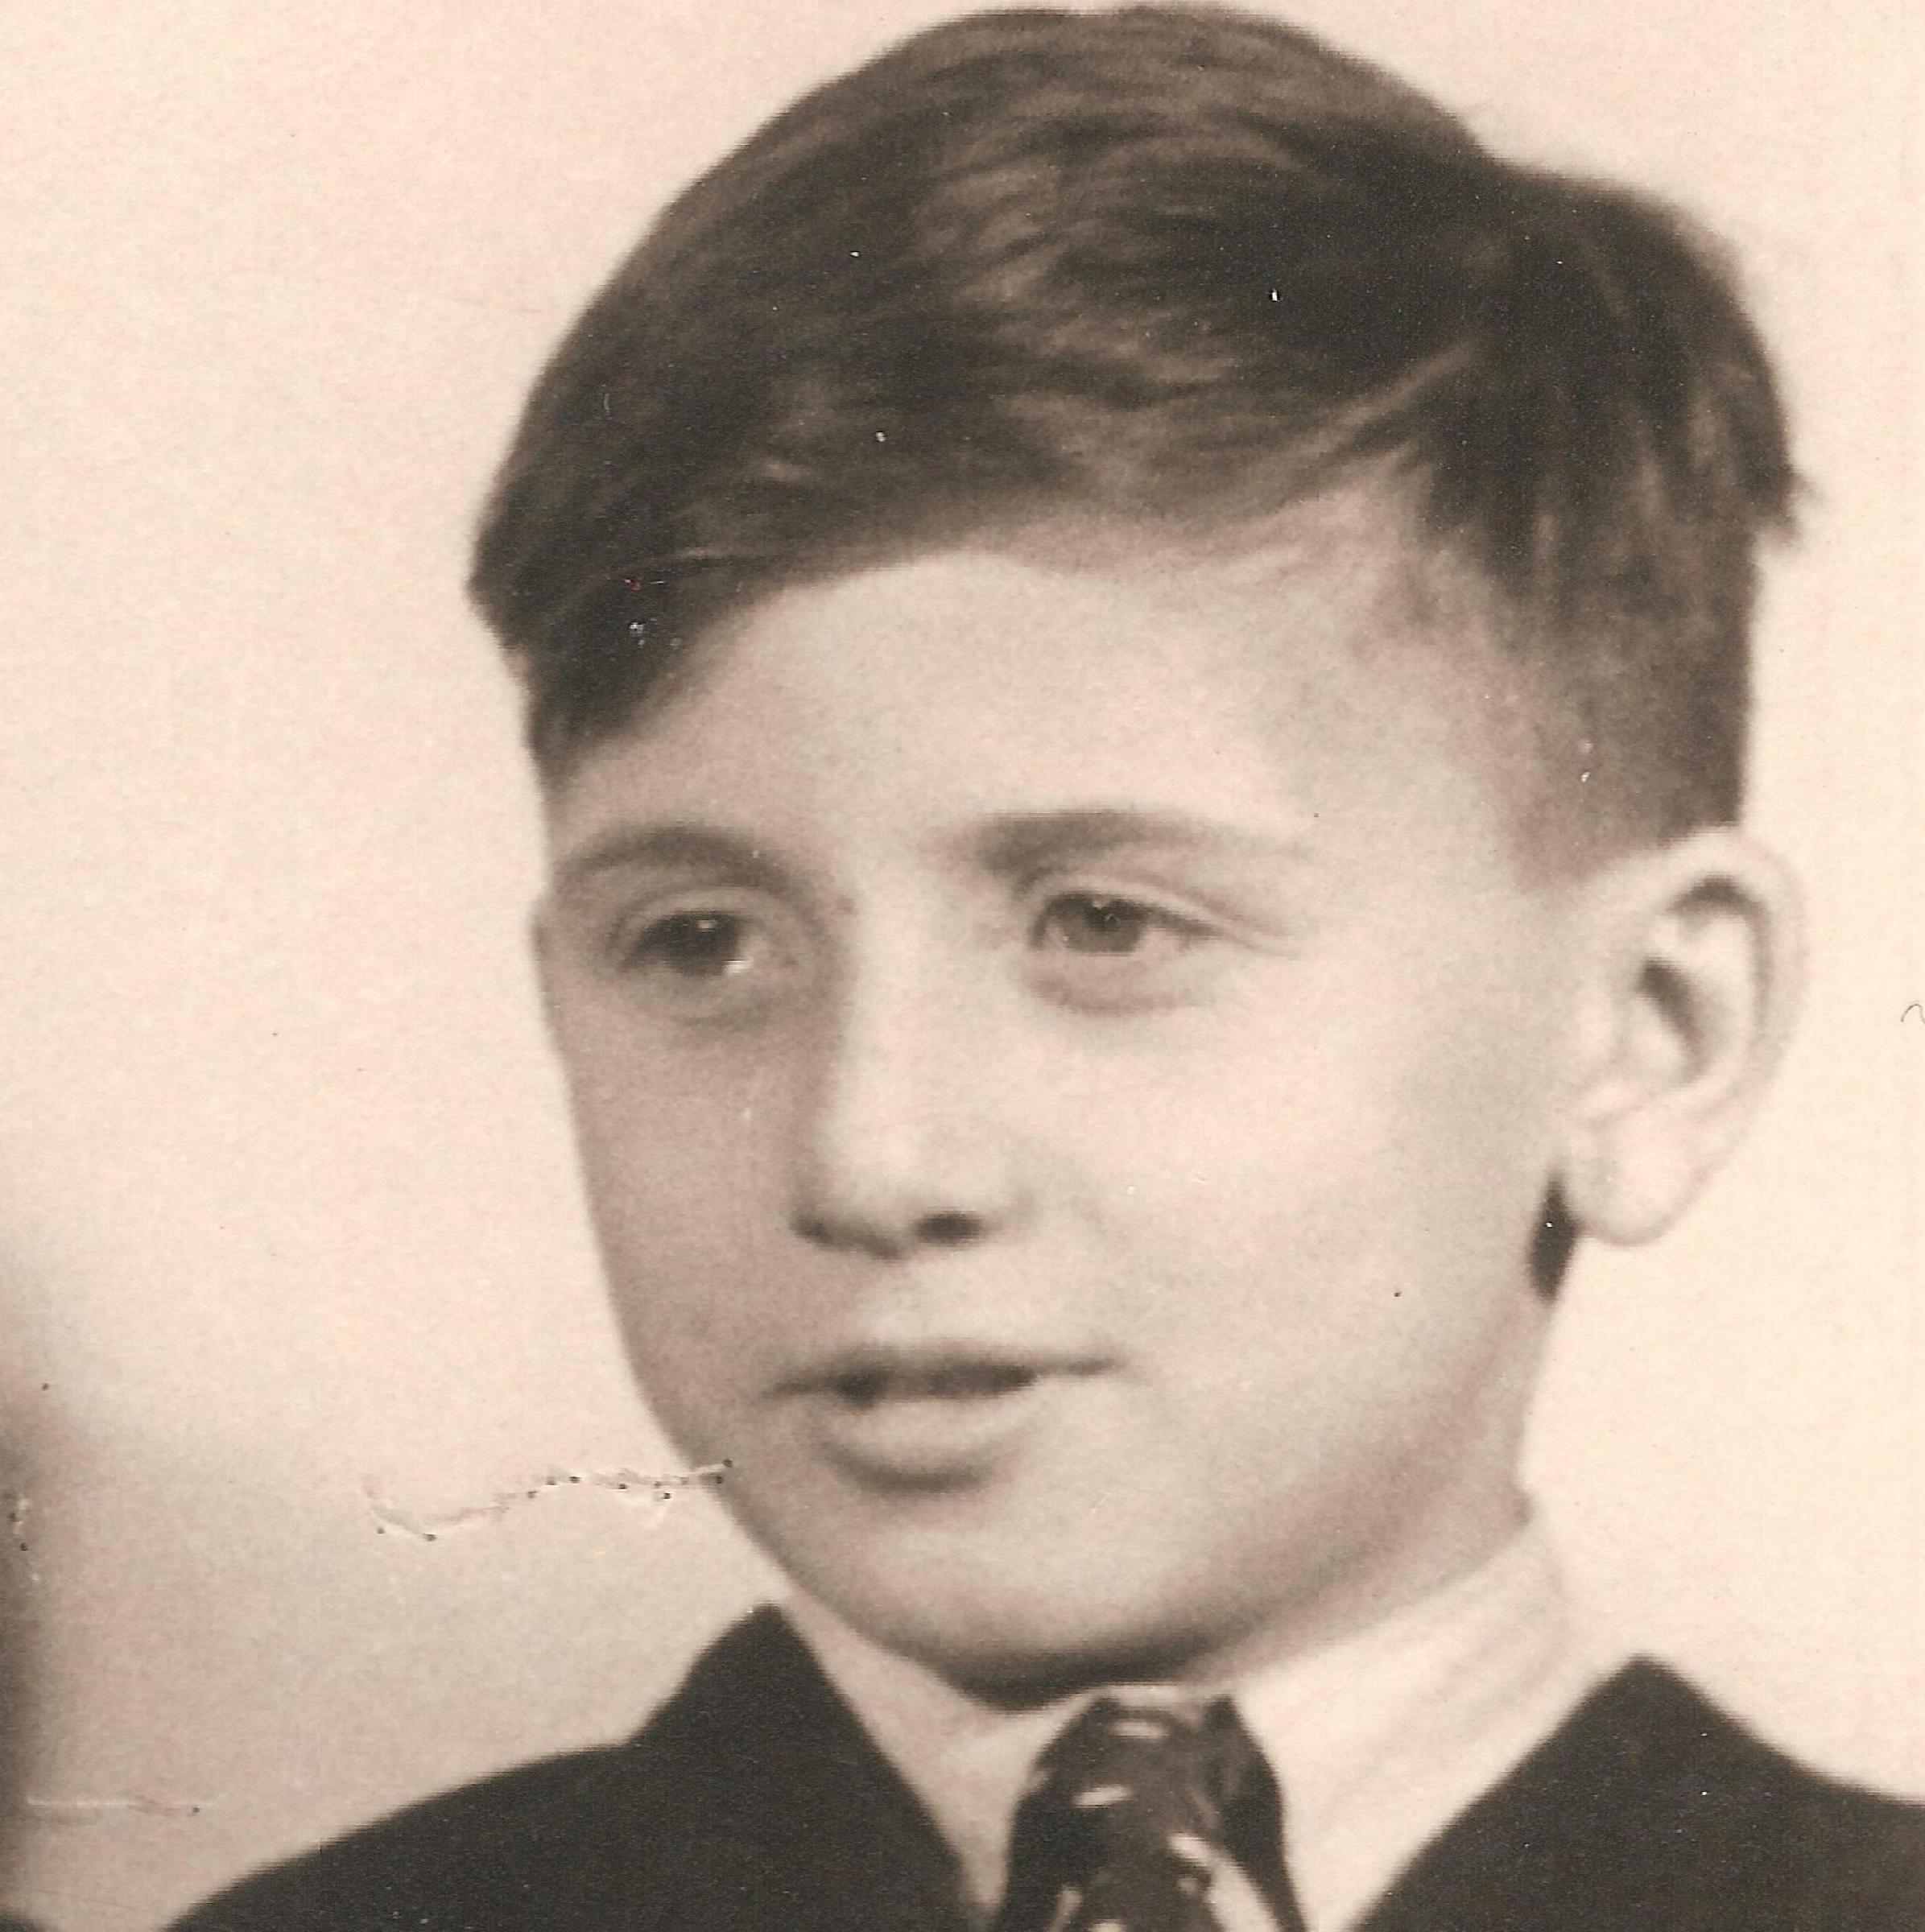 Jan Spira, 1940s